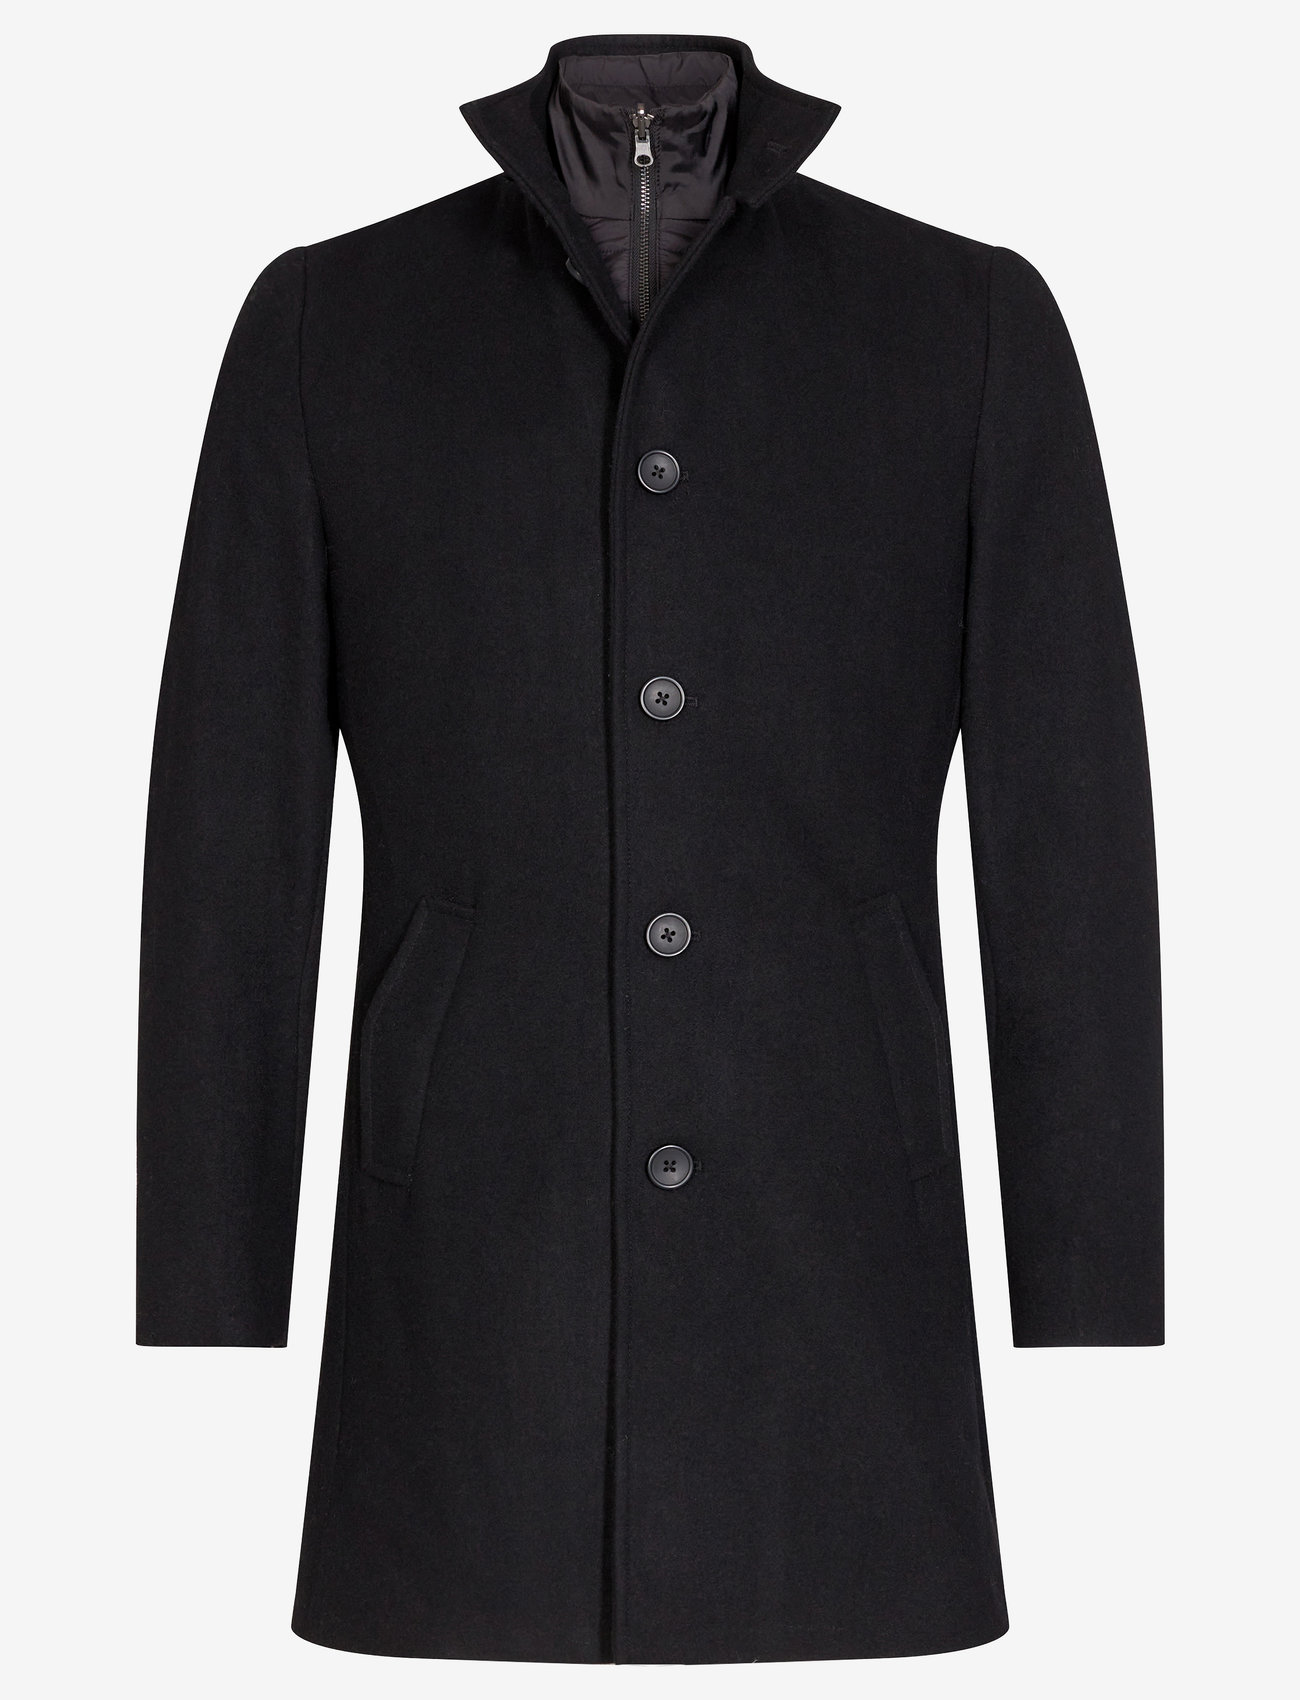 Bruun & Stengade - BS Ontario Slim Fit Coat - winterjassen - black - 0